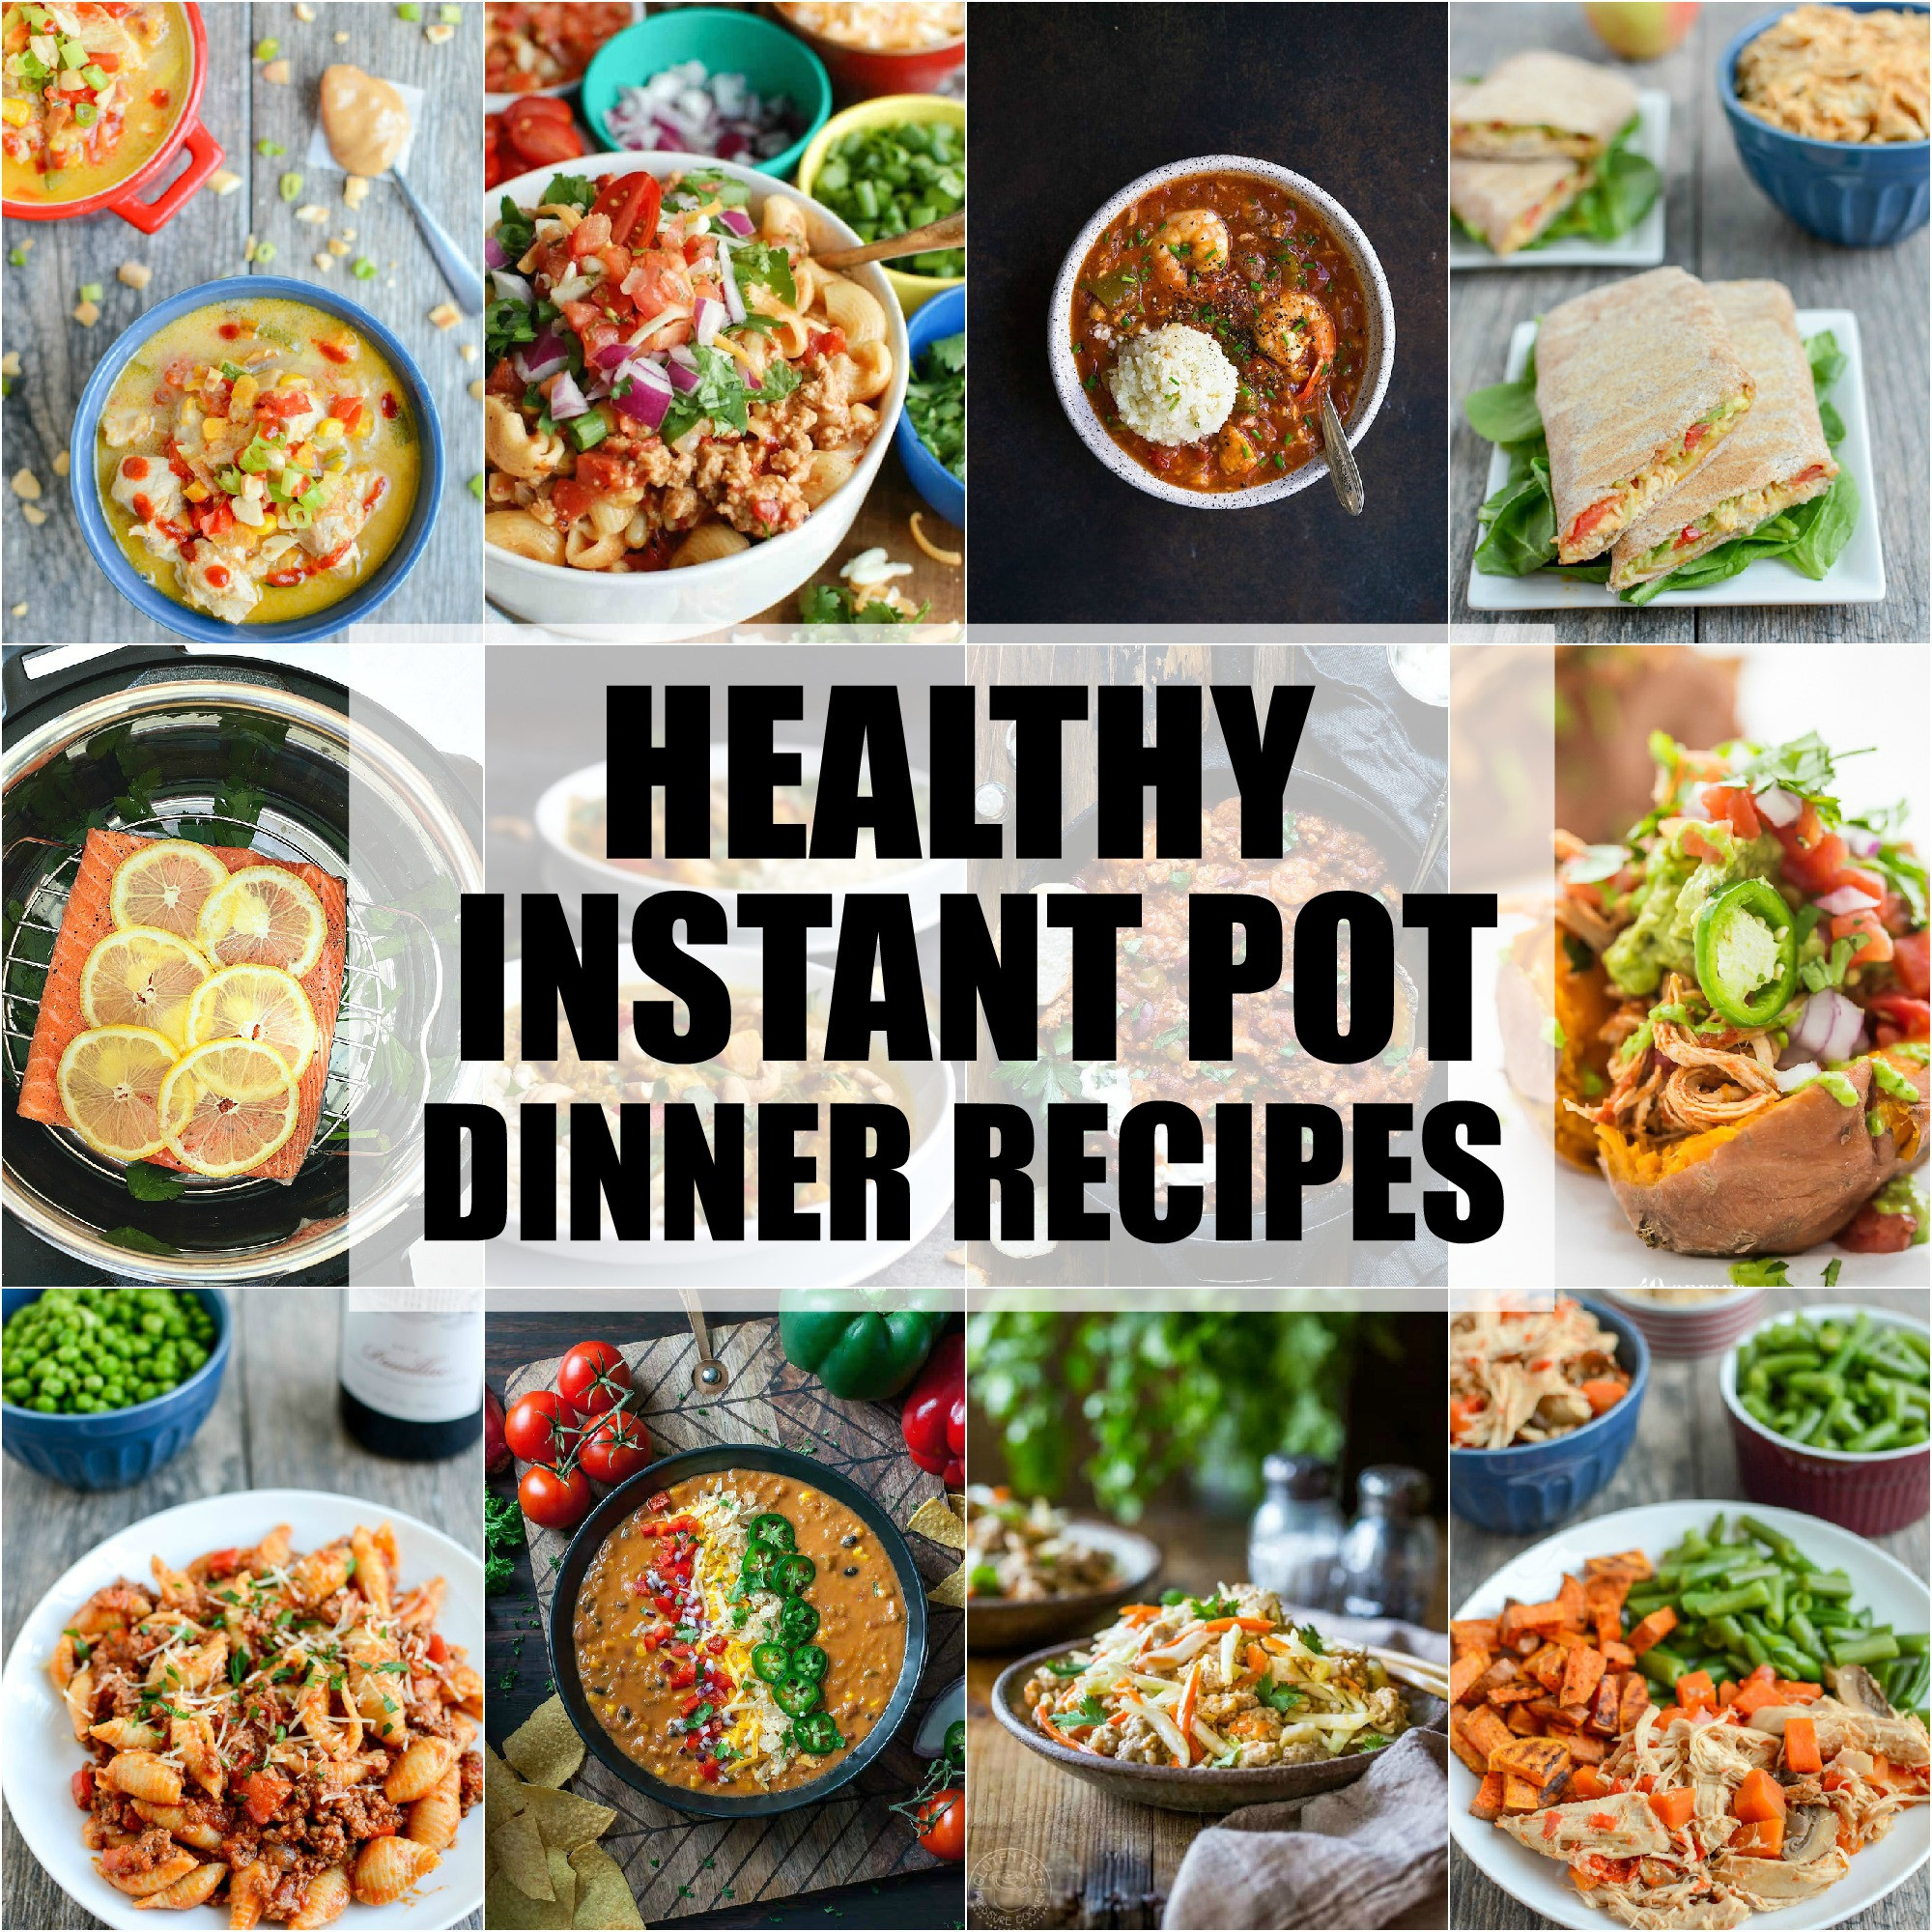 Best Healthy Instant Pot Recipes
 Healthy Instant Pot Dinner Recipes